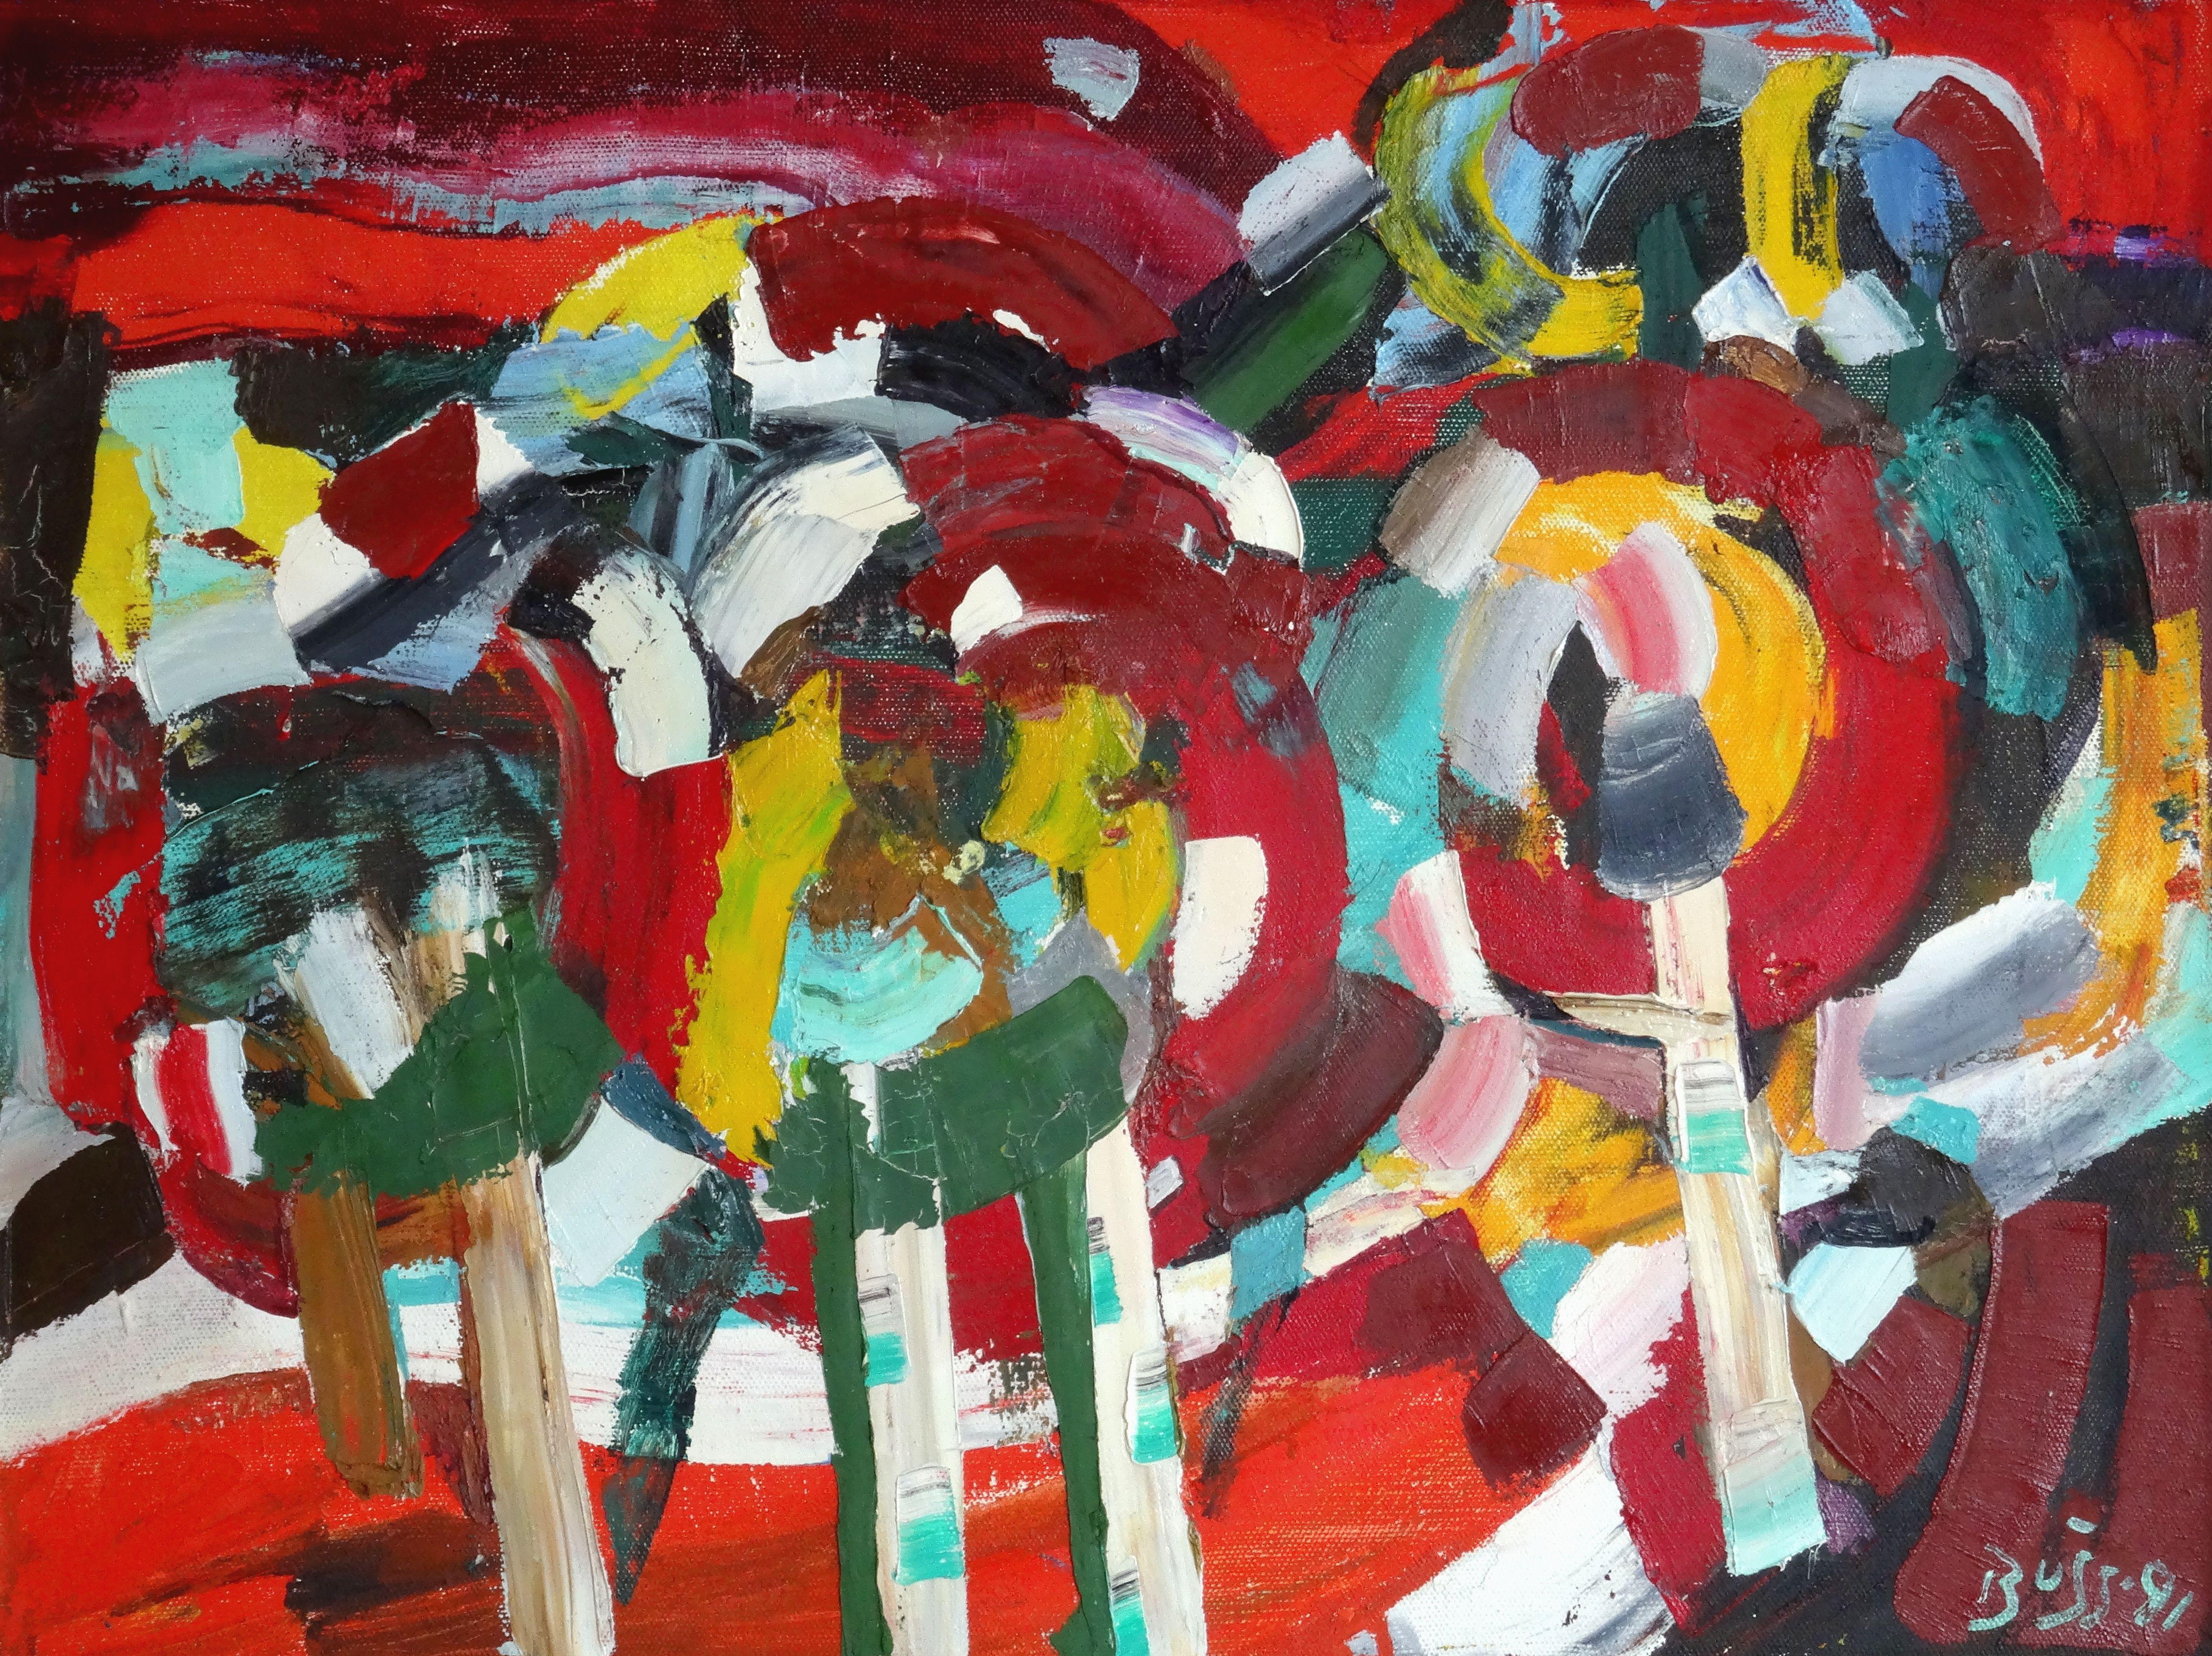 arbres rouges. 1991, huile sur toile, 60x80 cm